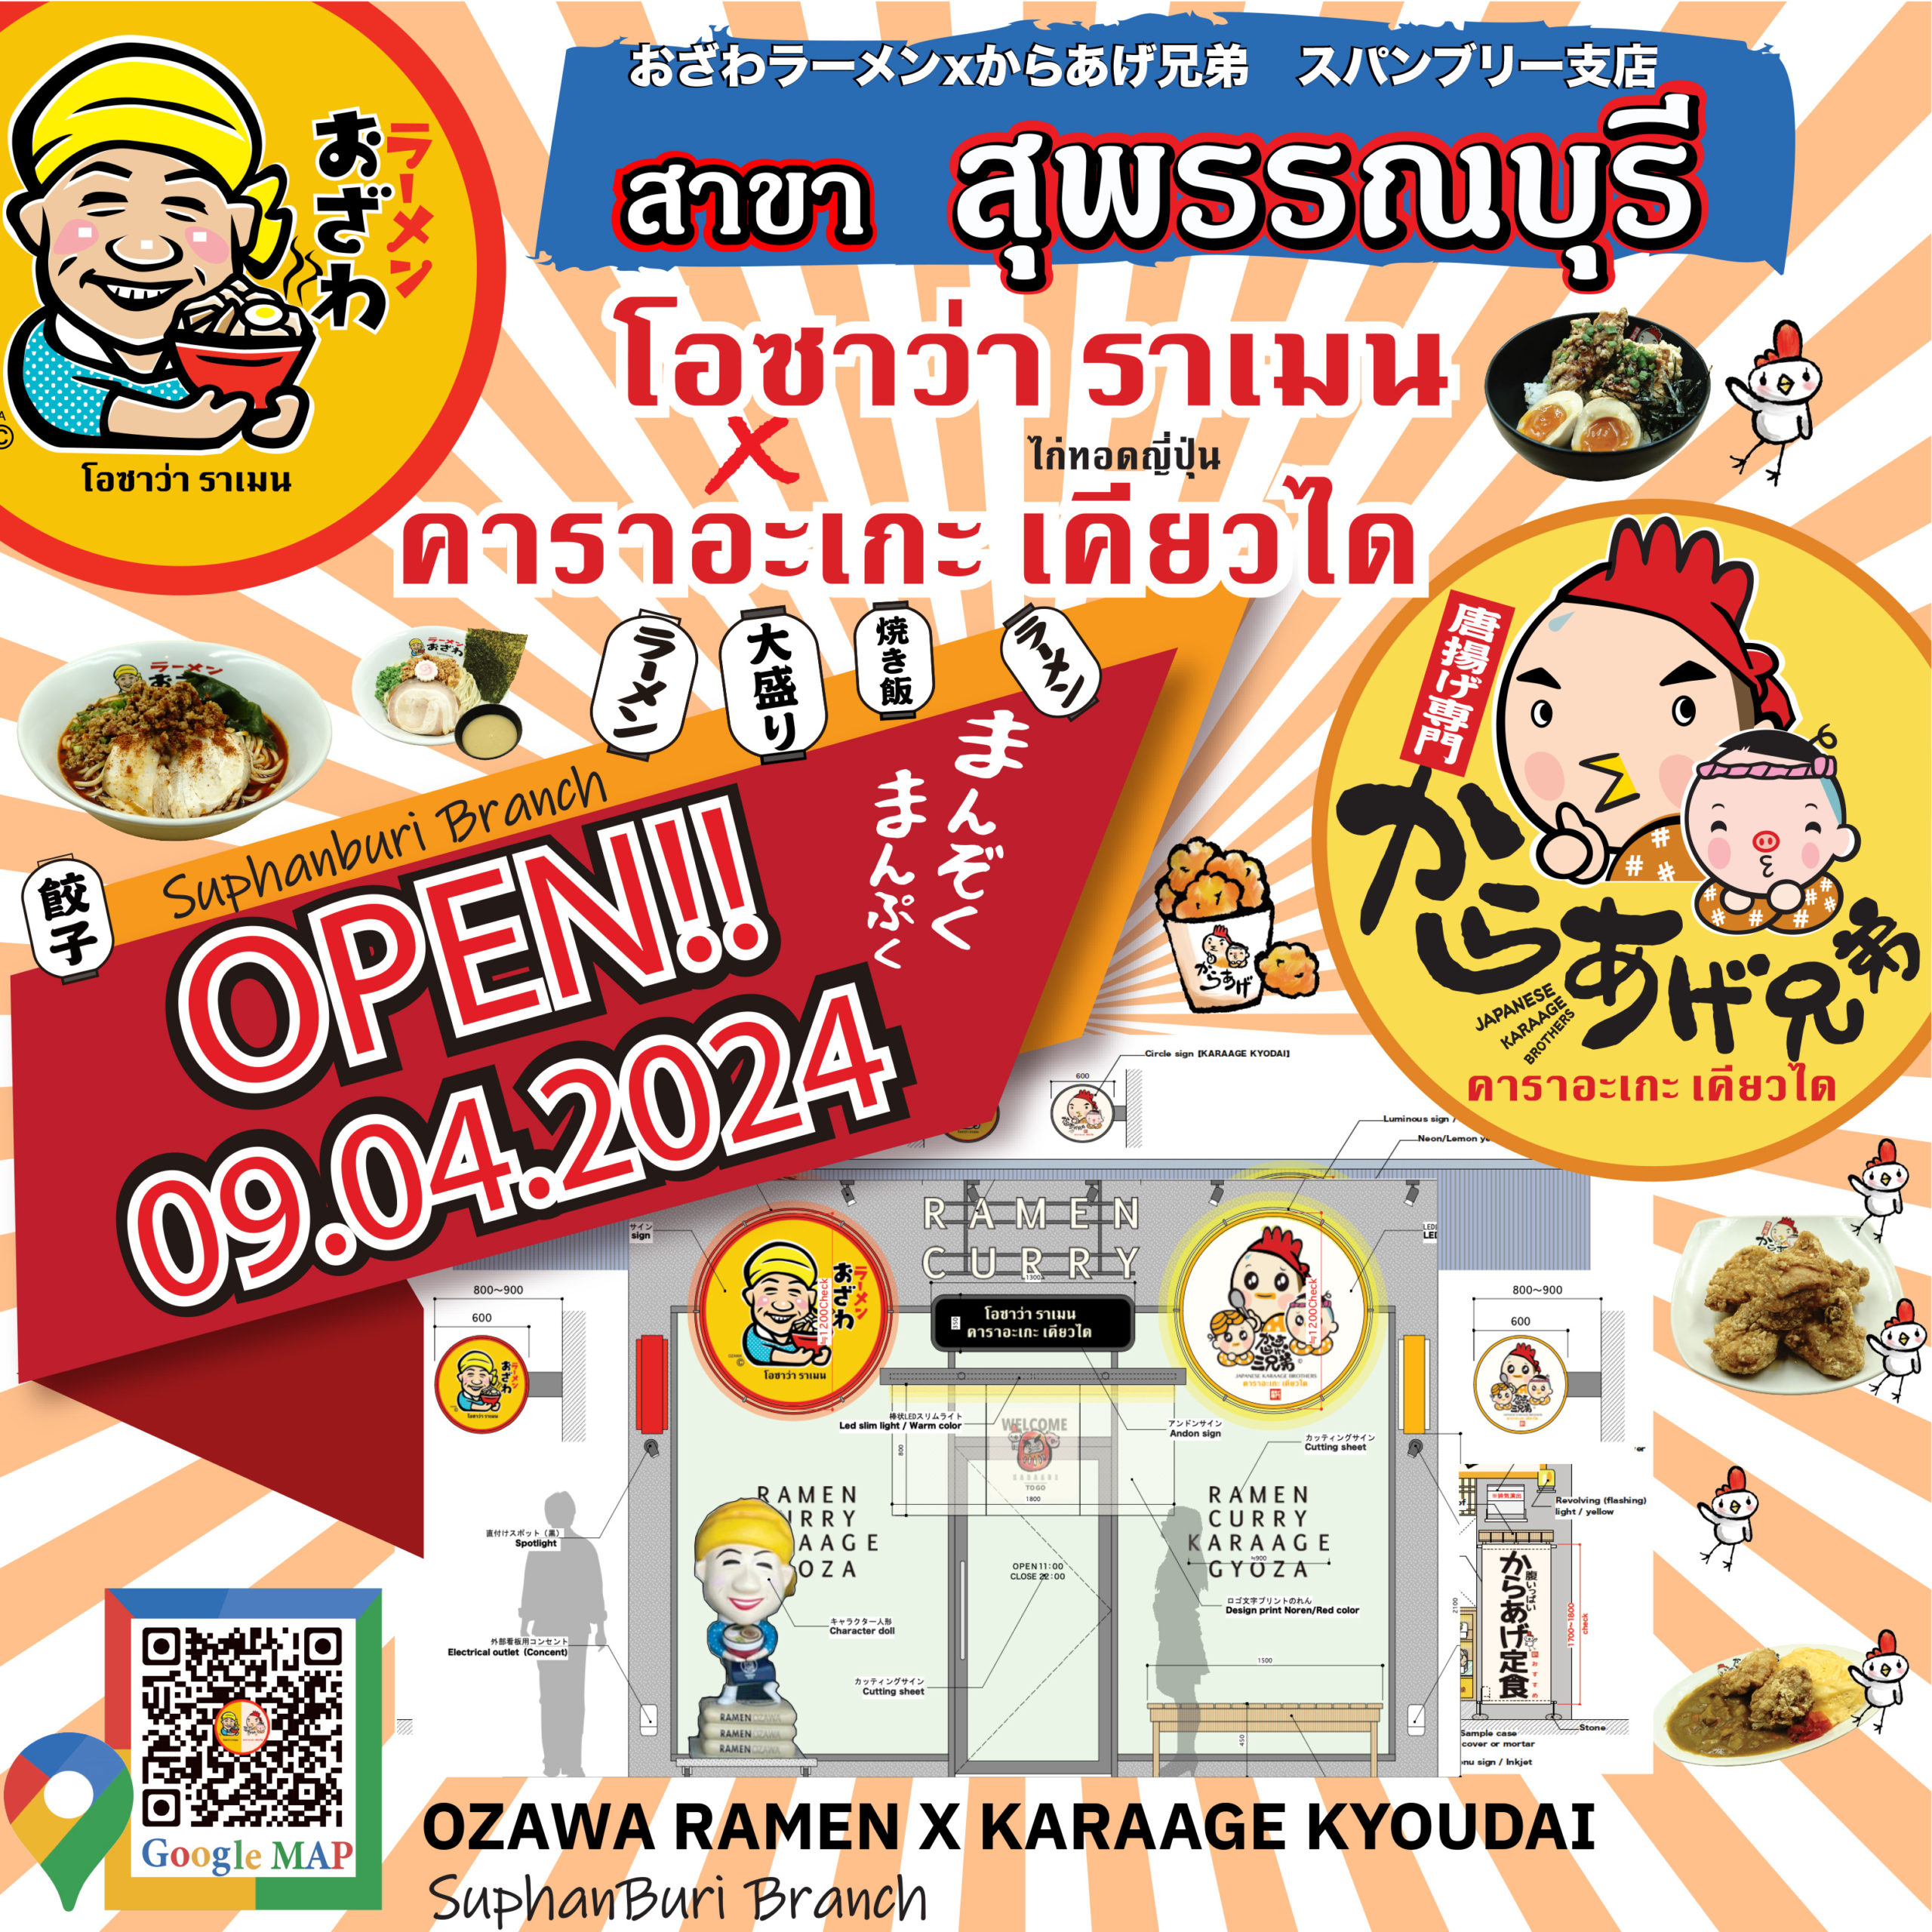 Ozawa Ramen X Karaage Kyoudai Suphan Buri branch will open on 9th April!